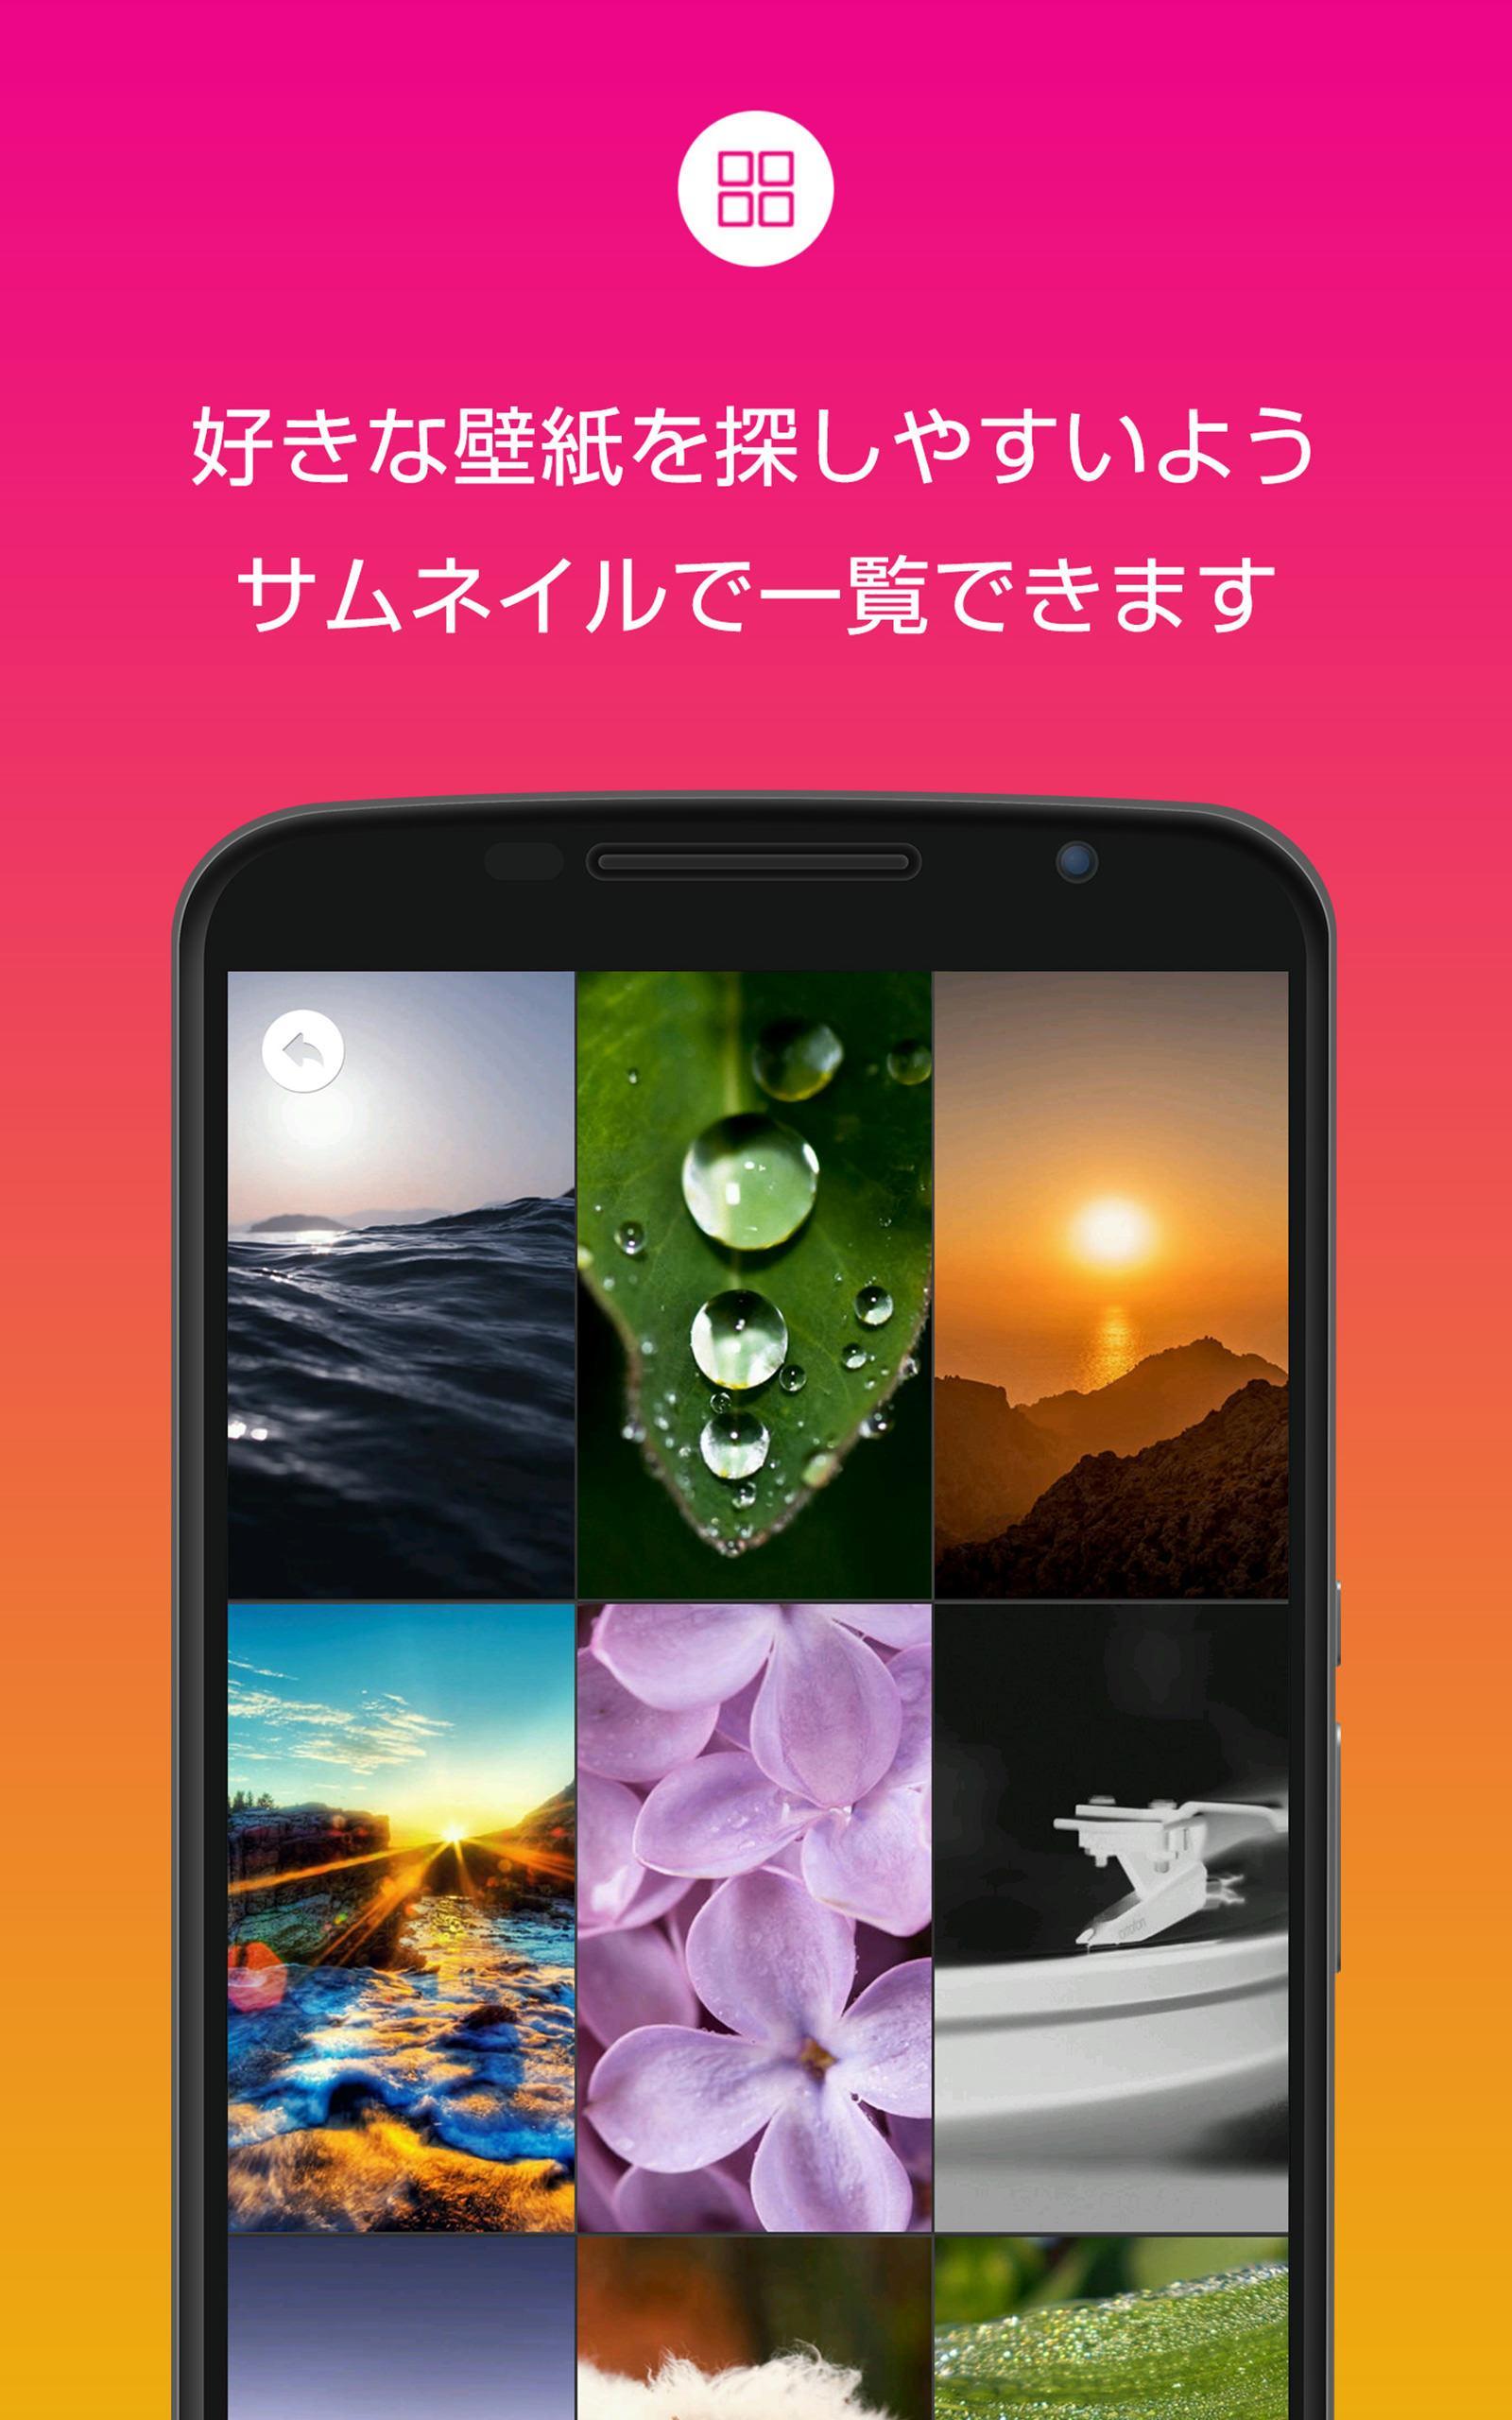 Android 用の 綺麗な高画質壁紙 美しい背景画像 Apk をダウンロード